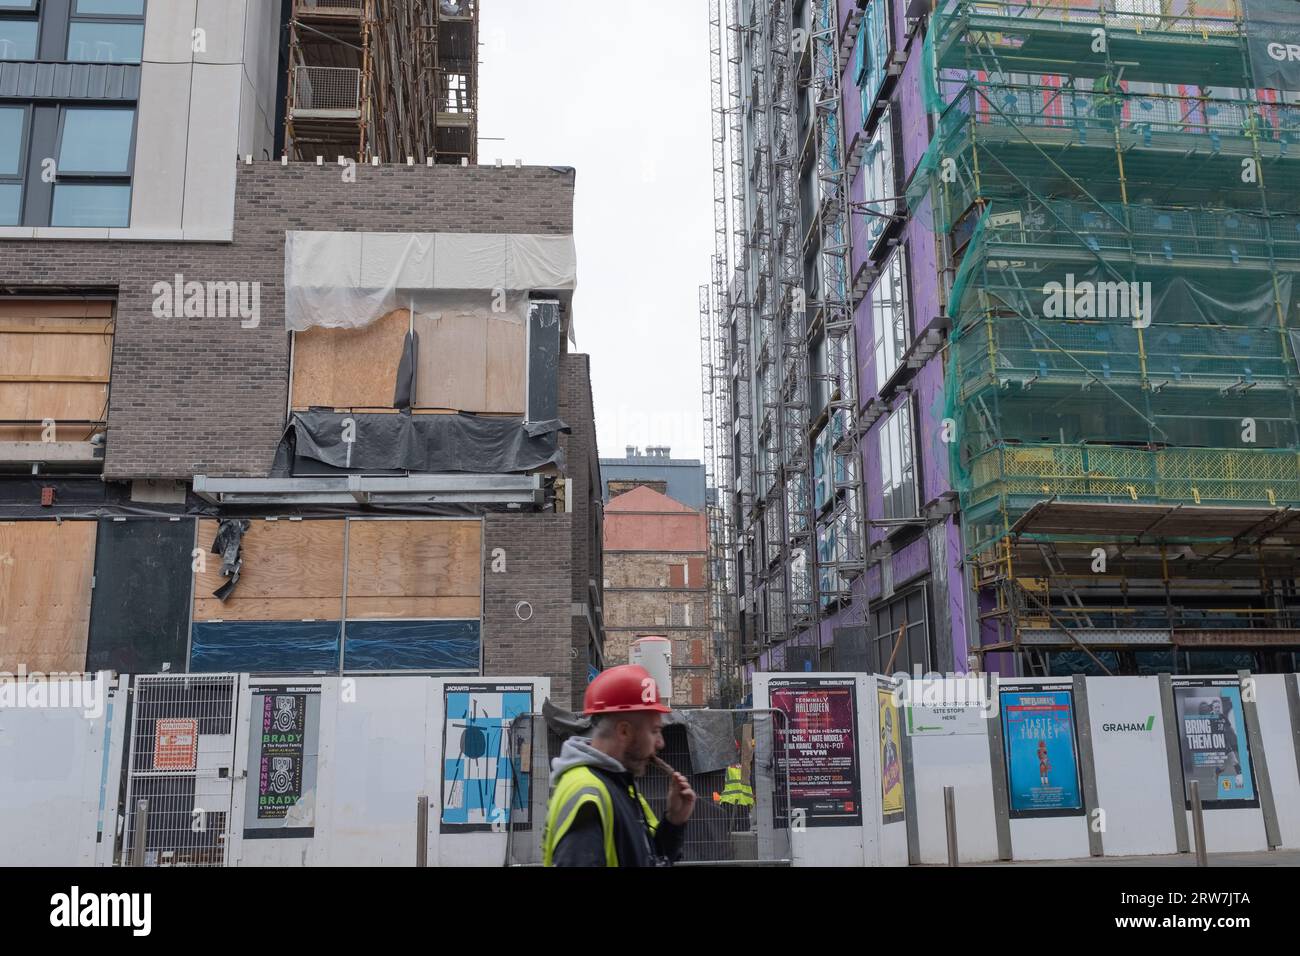 Ein Bauarbeiter läuft mit einer Eislutsche während einer Pause an der Argyll Street, Glasgow vorbei. Gerüste und Konstruktionstechniken sind sichtbar. Stockfoto